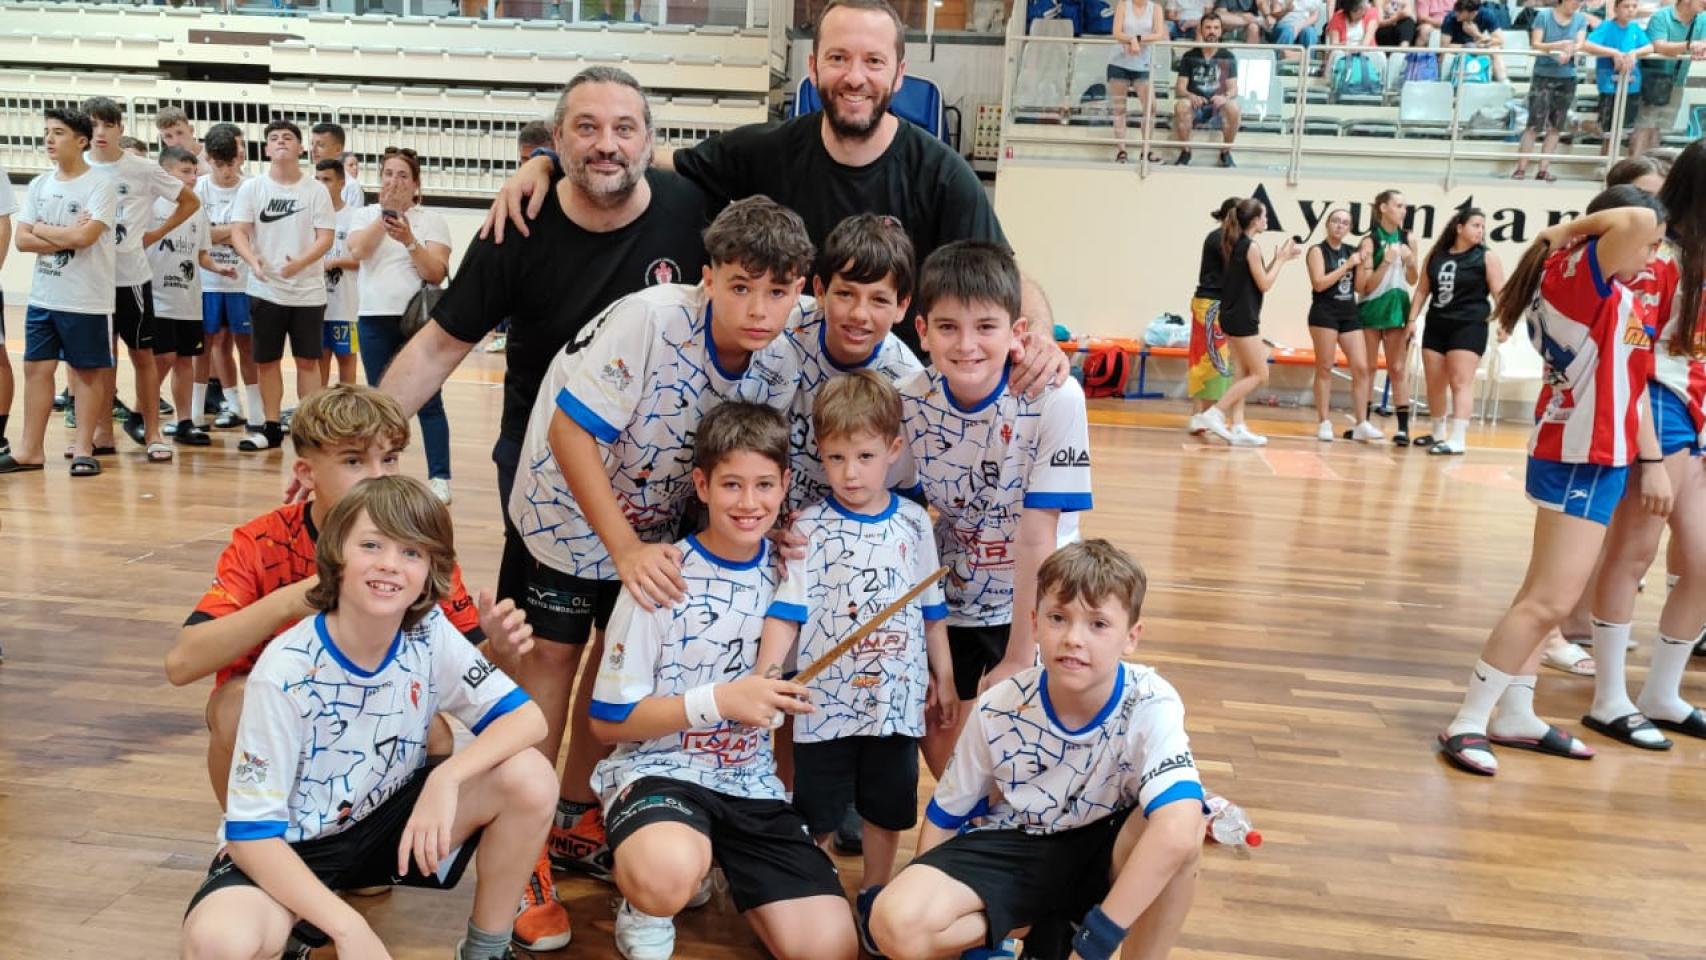 Acabó la Toledo Handball Cup tras unas finales apasionantes